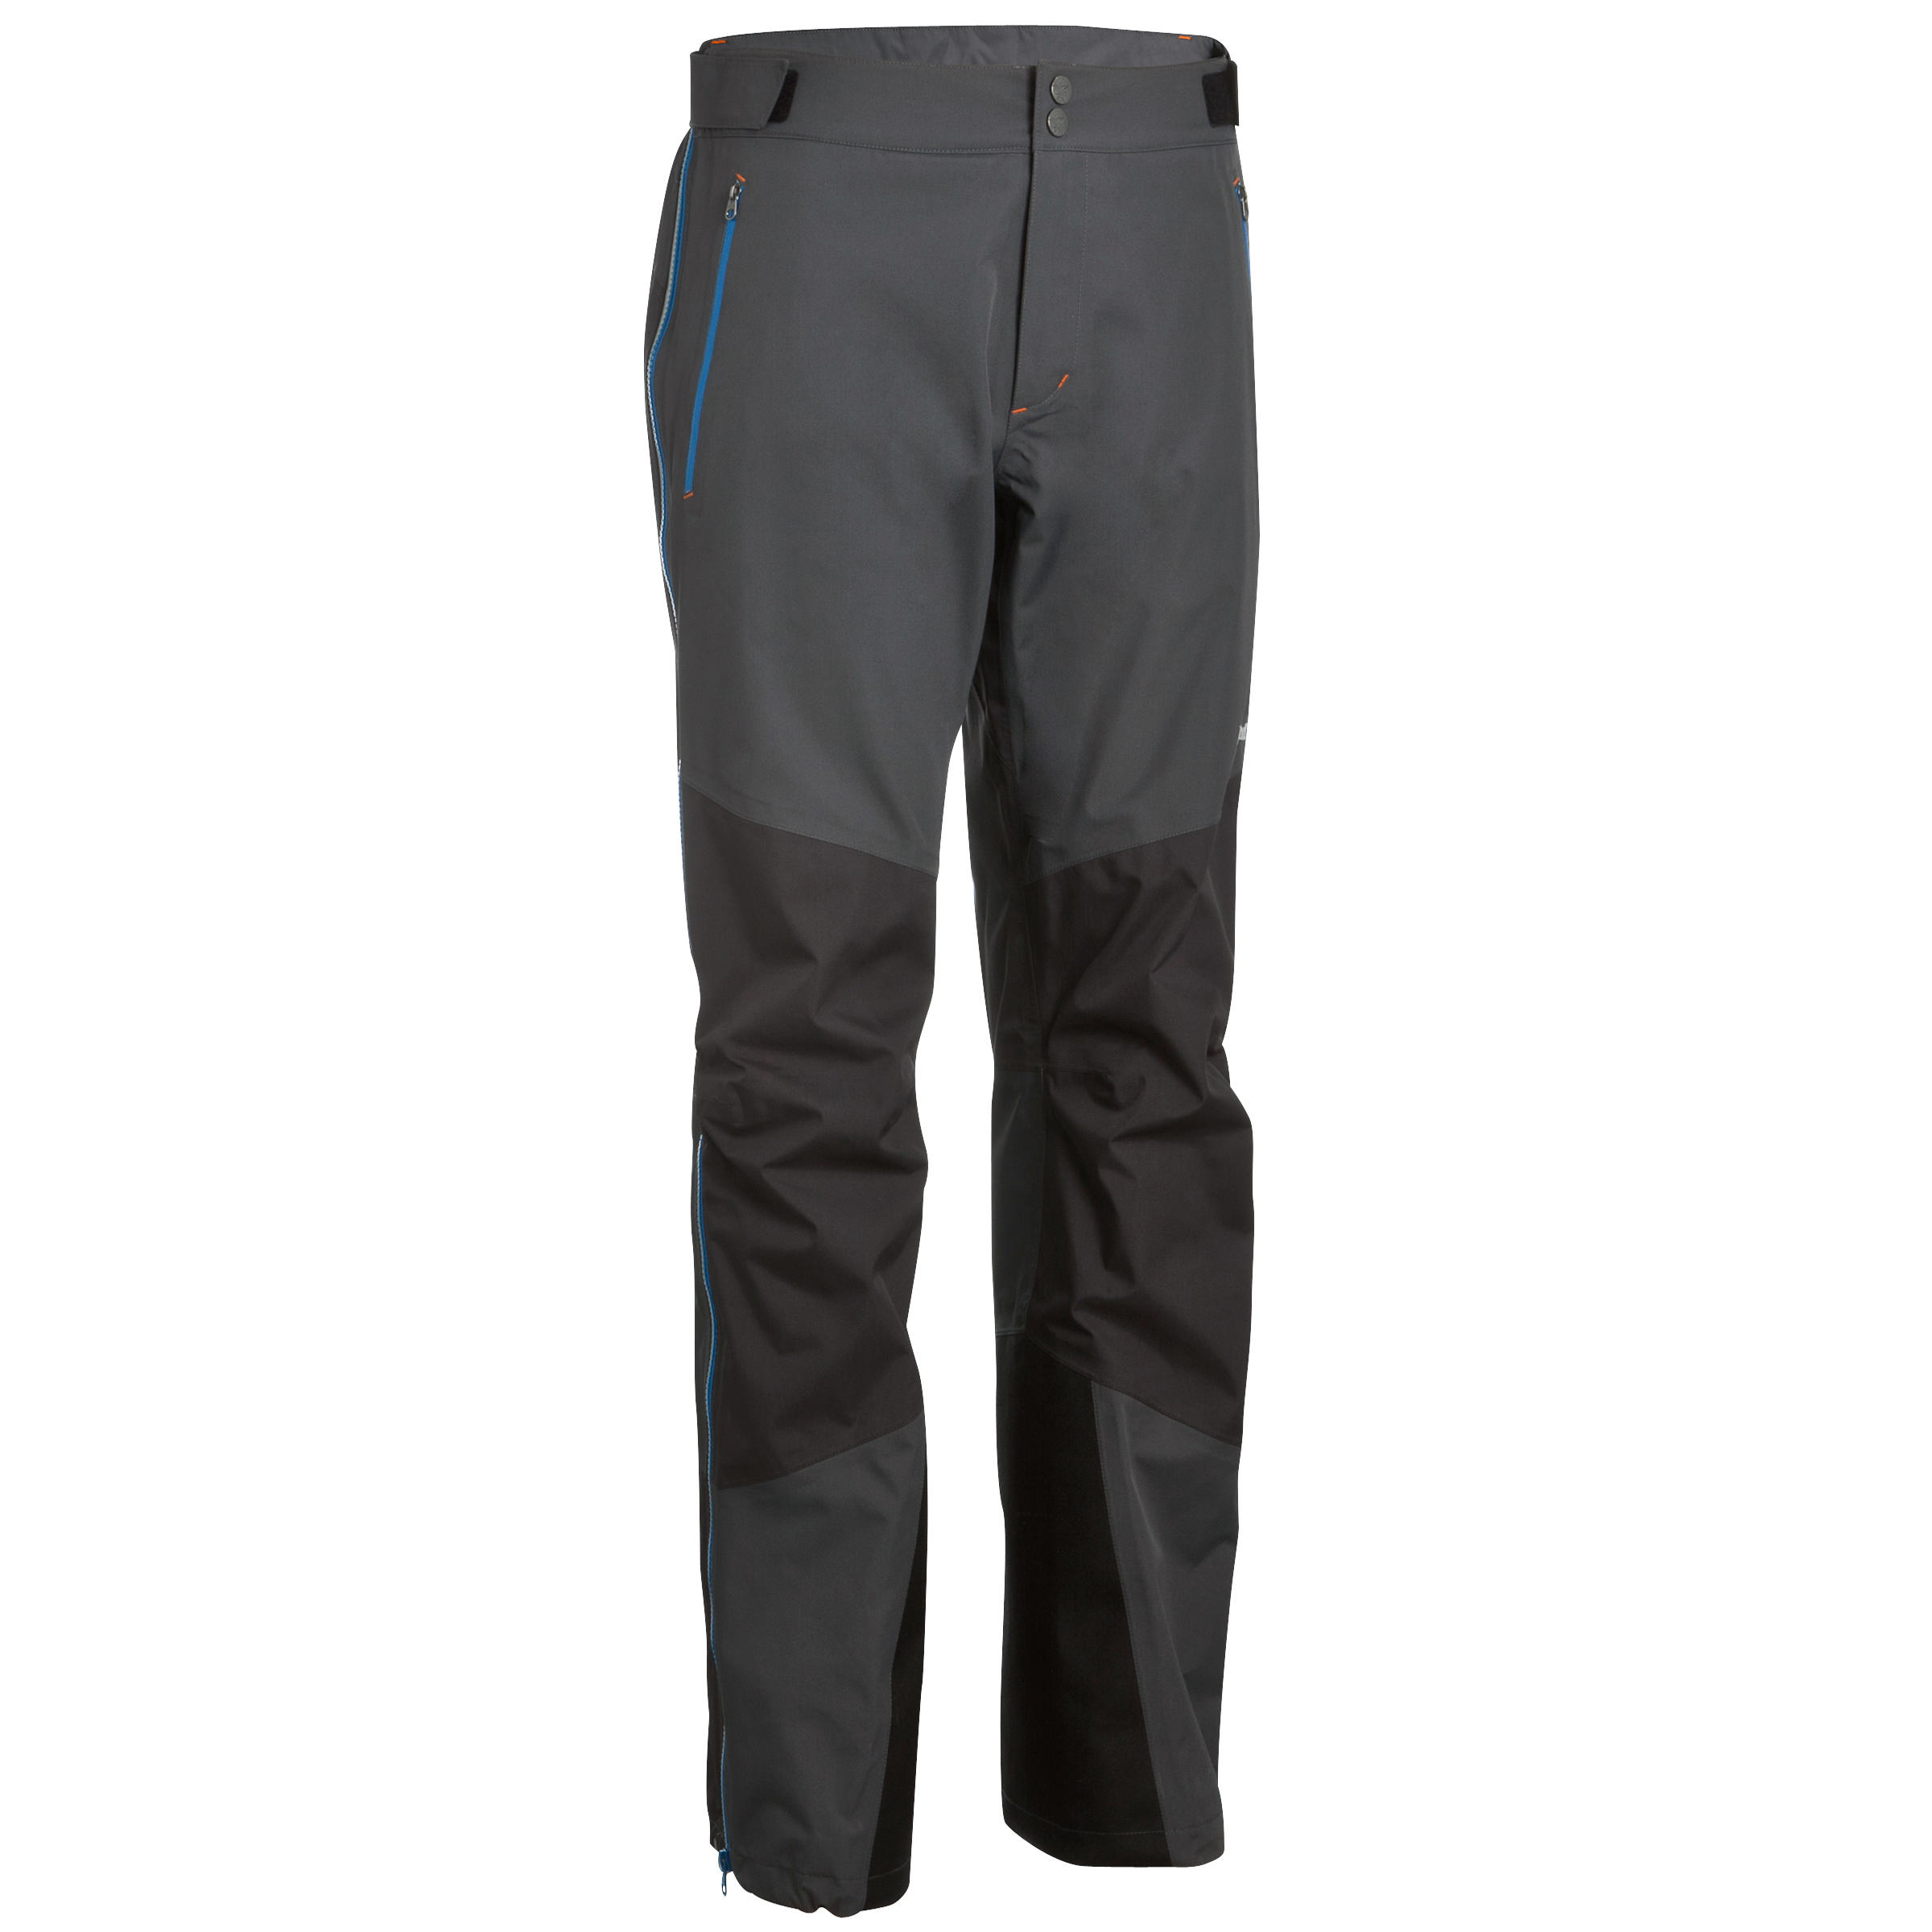 Quechua Men's SH100 X-Warm Water-Repellent Hiking Pants | Hiking pants,  Hiking pants mens, Water repellent